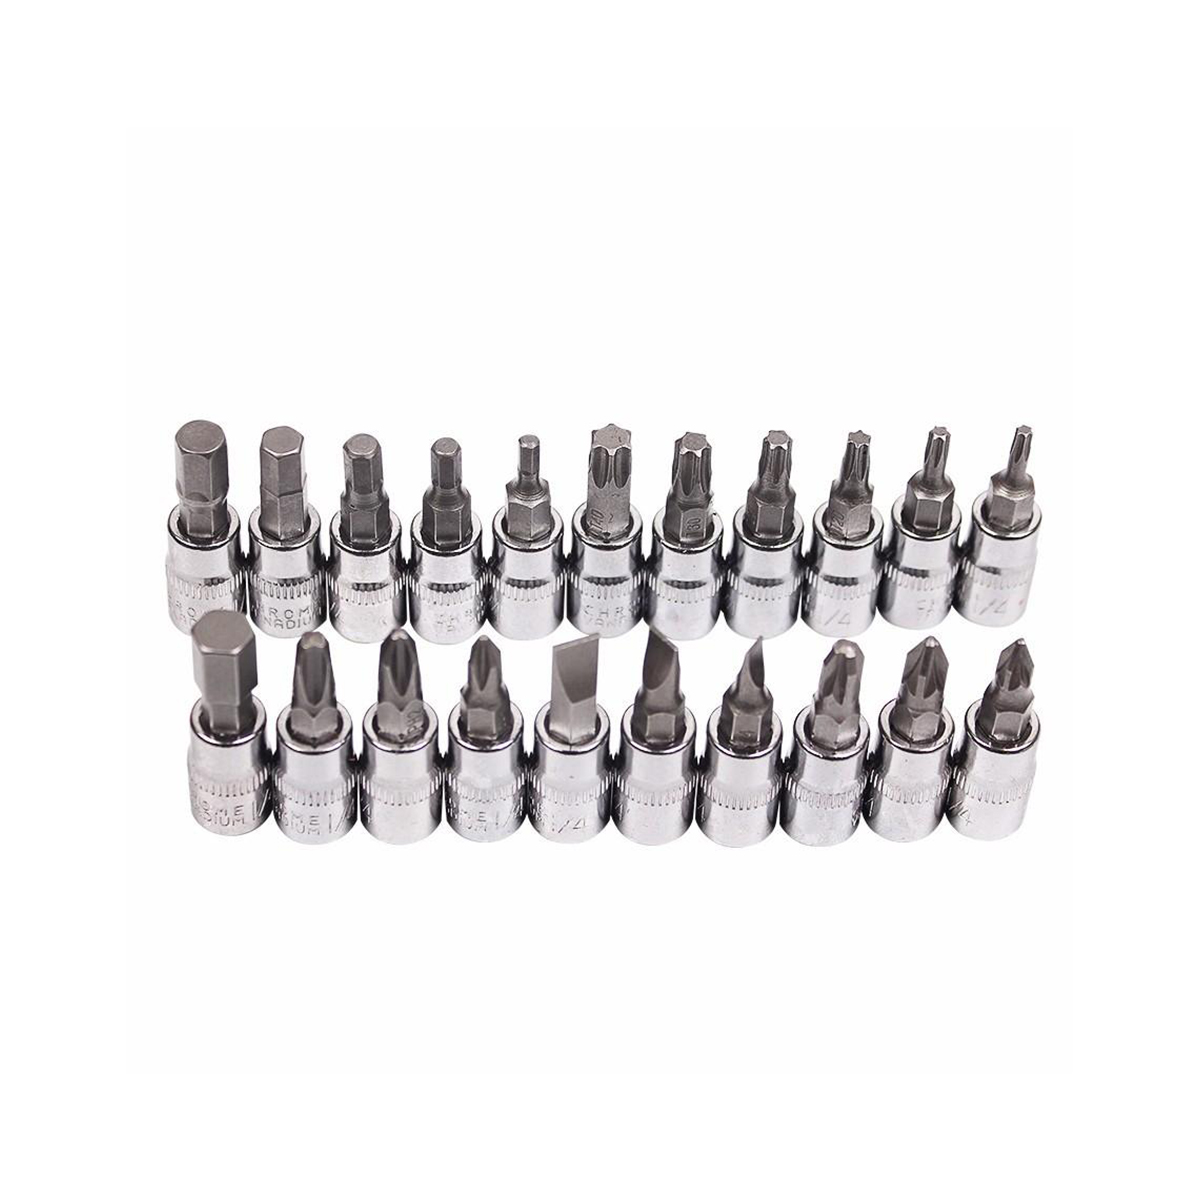 46 pièces 1/4 'dr Crv acier métrique voiture réparation boîte à outils clé à douille outils ensemble avec poignée à cliquet